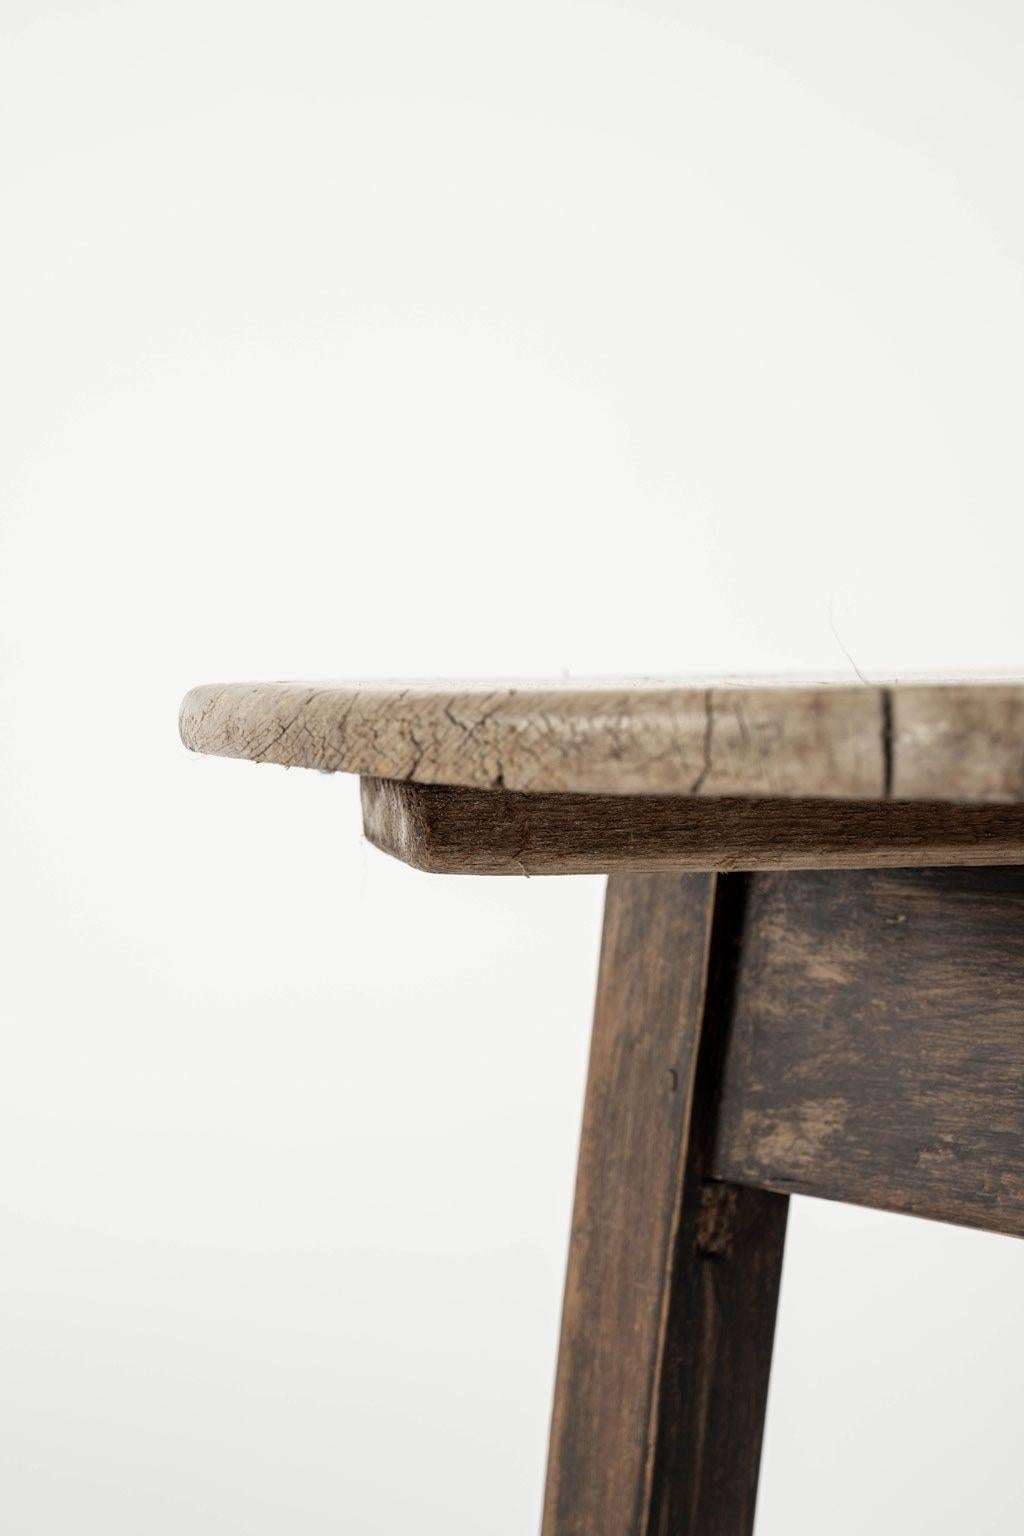 Cricket-Tisch mit geschrubbter Platte aus walisischem Kiefernholz, ca. 1840-1859. Gebleichte und geschrubbte runde Kieferplatte, deren Kanten von zwei Jahrhunderten Gebrauch aufgeweicht sind. Auf drei verjüngten, gut abgenutzten Lehnsockeln stehend.